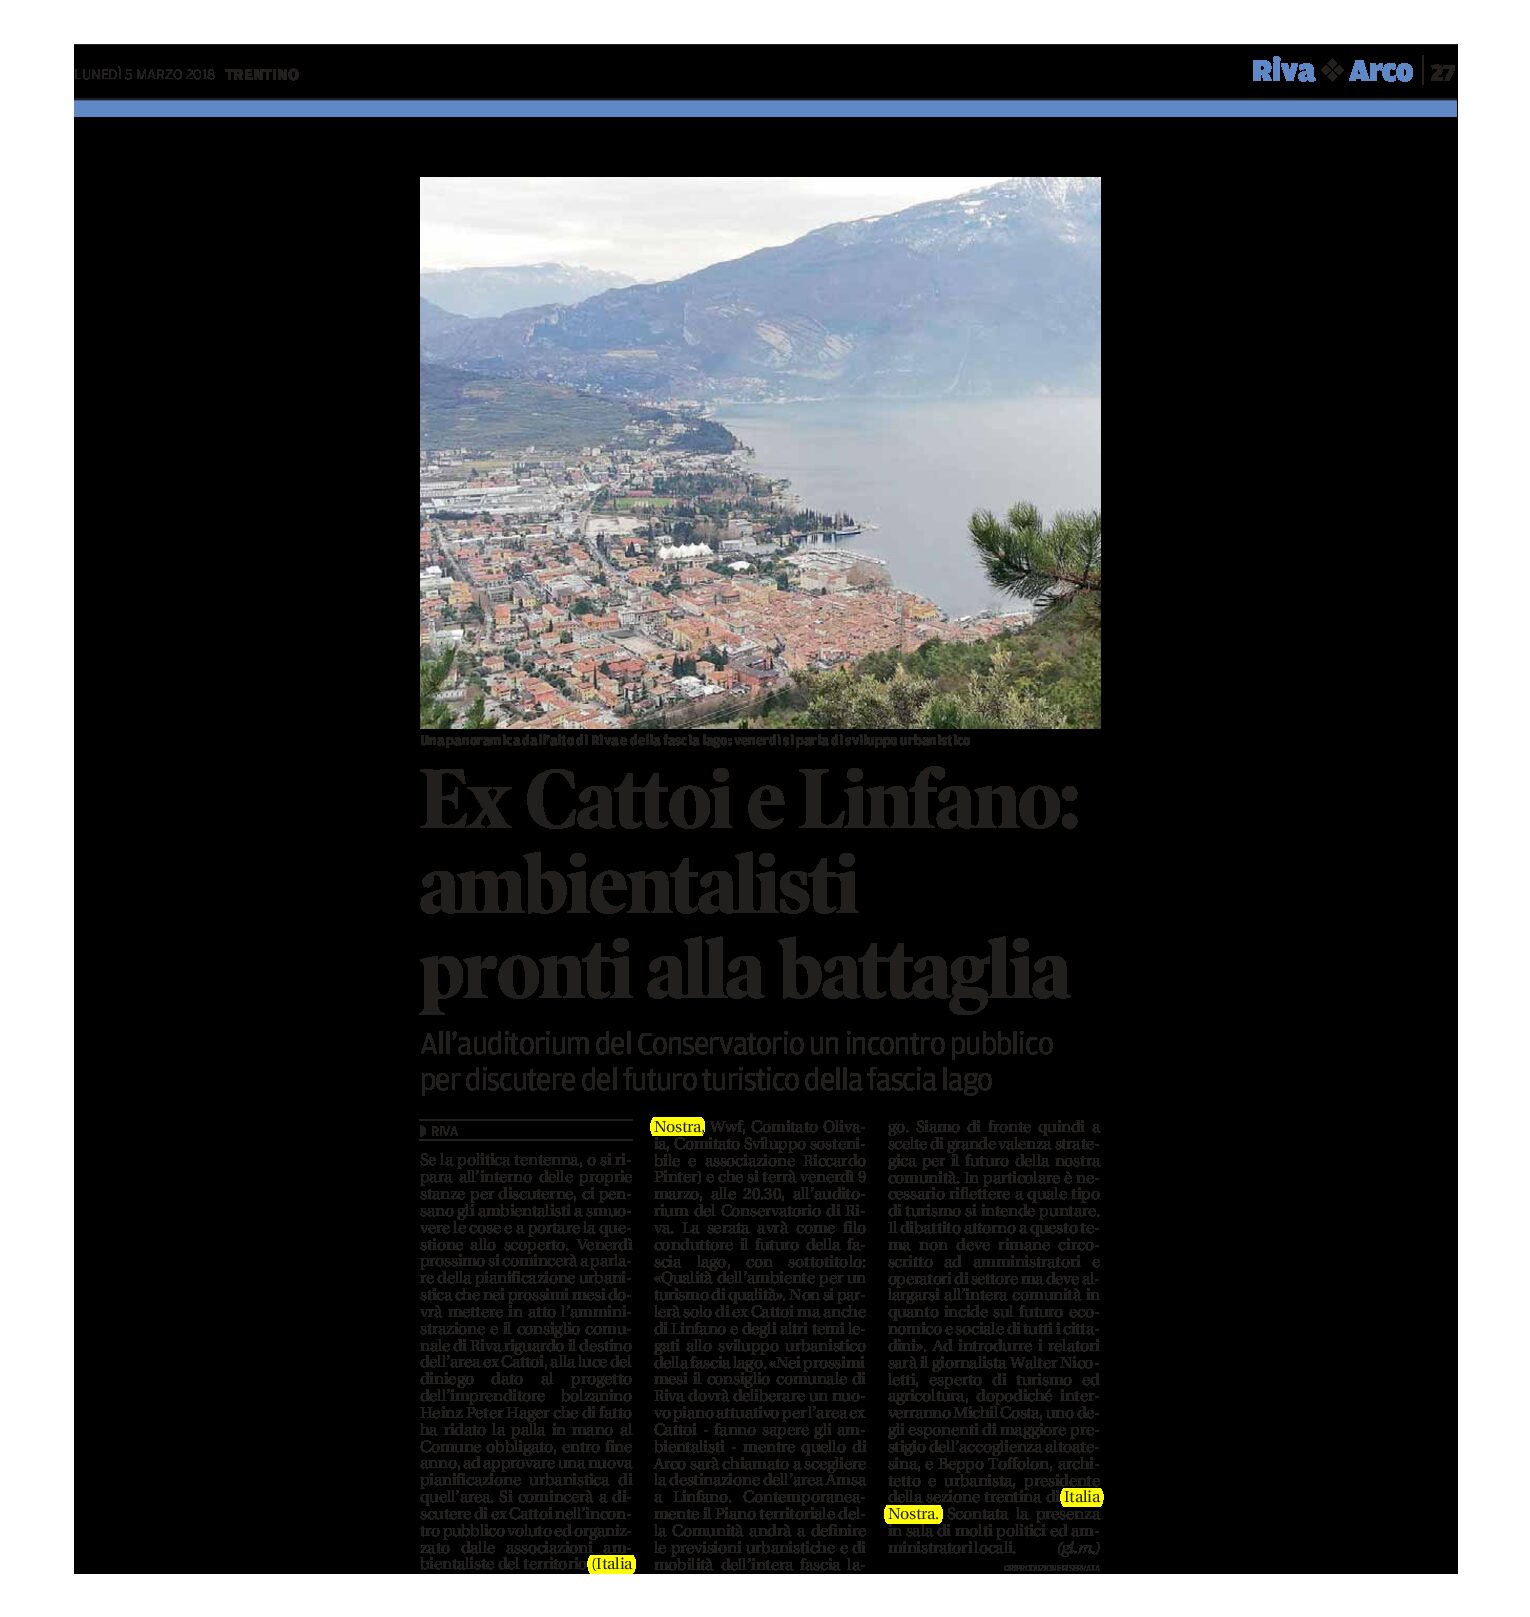 Riva, ex Cattoi e Linfano: incontro pubblico per discutere del futuro turistico della fascia lago